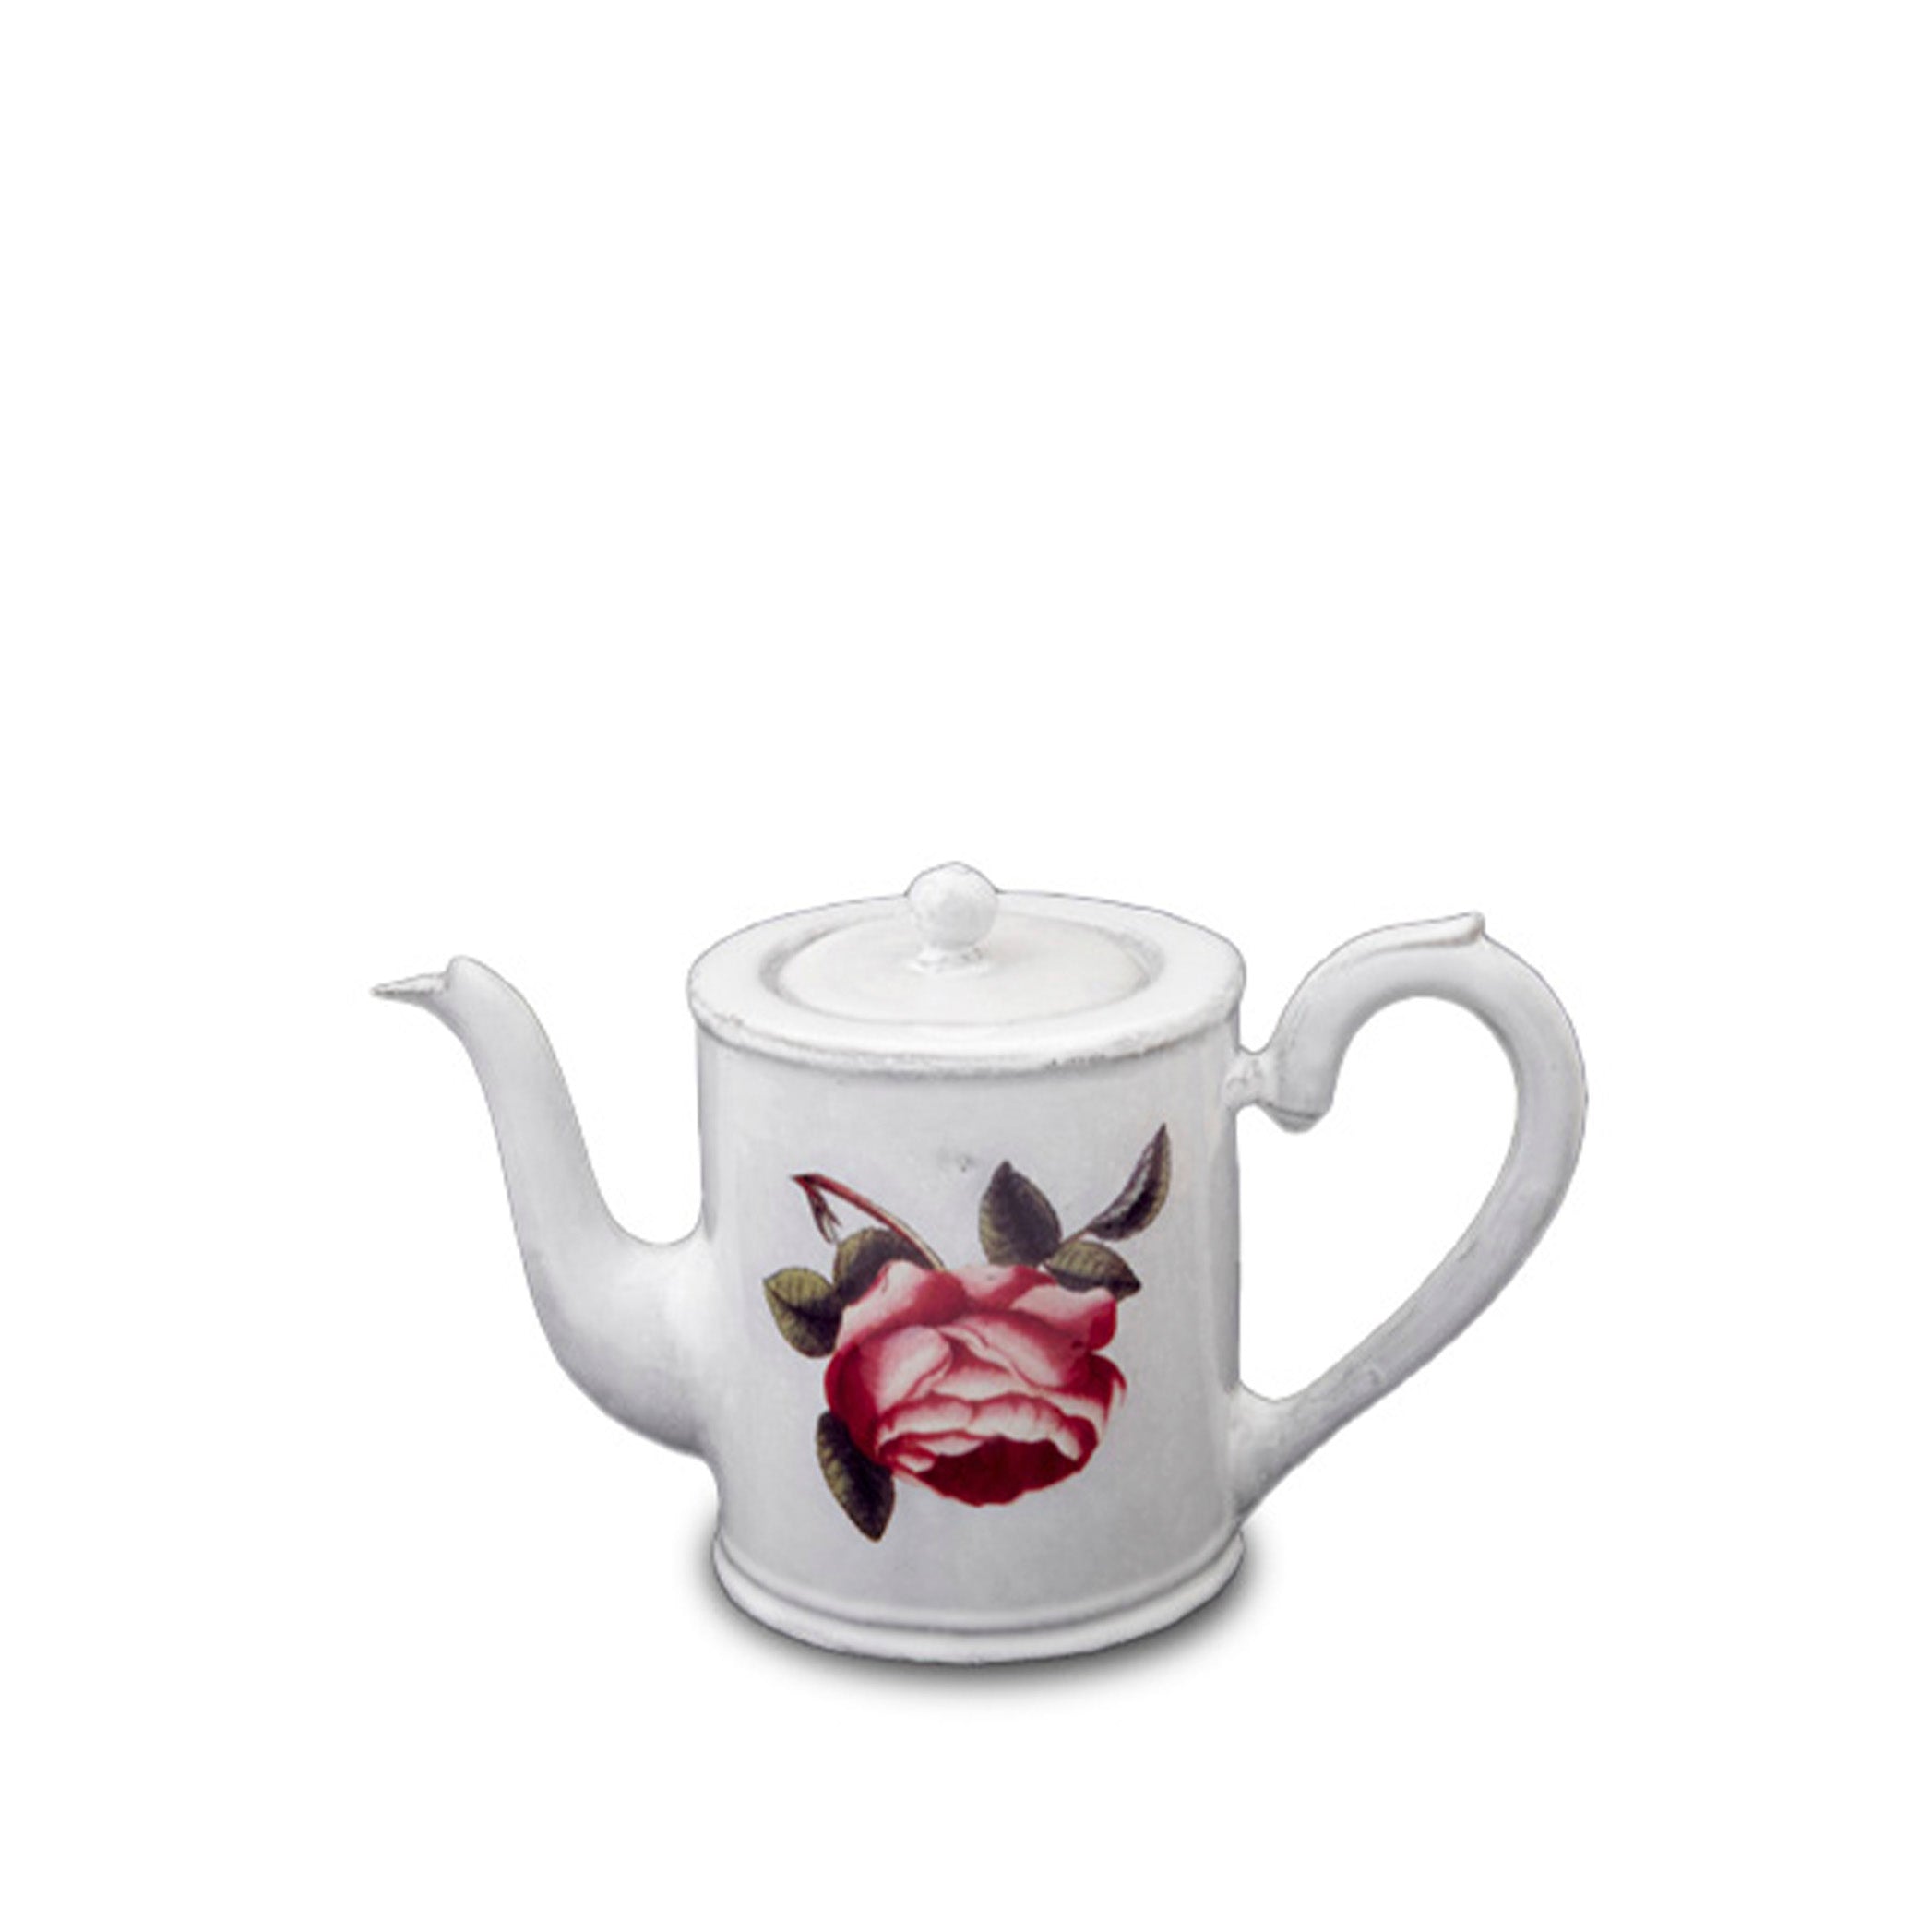 Small Rosa Centilolia Teapot by Astier de Villatte